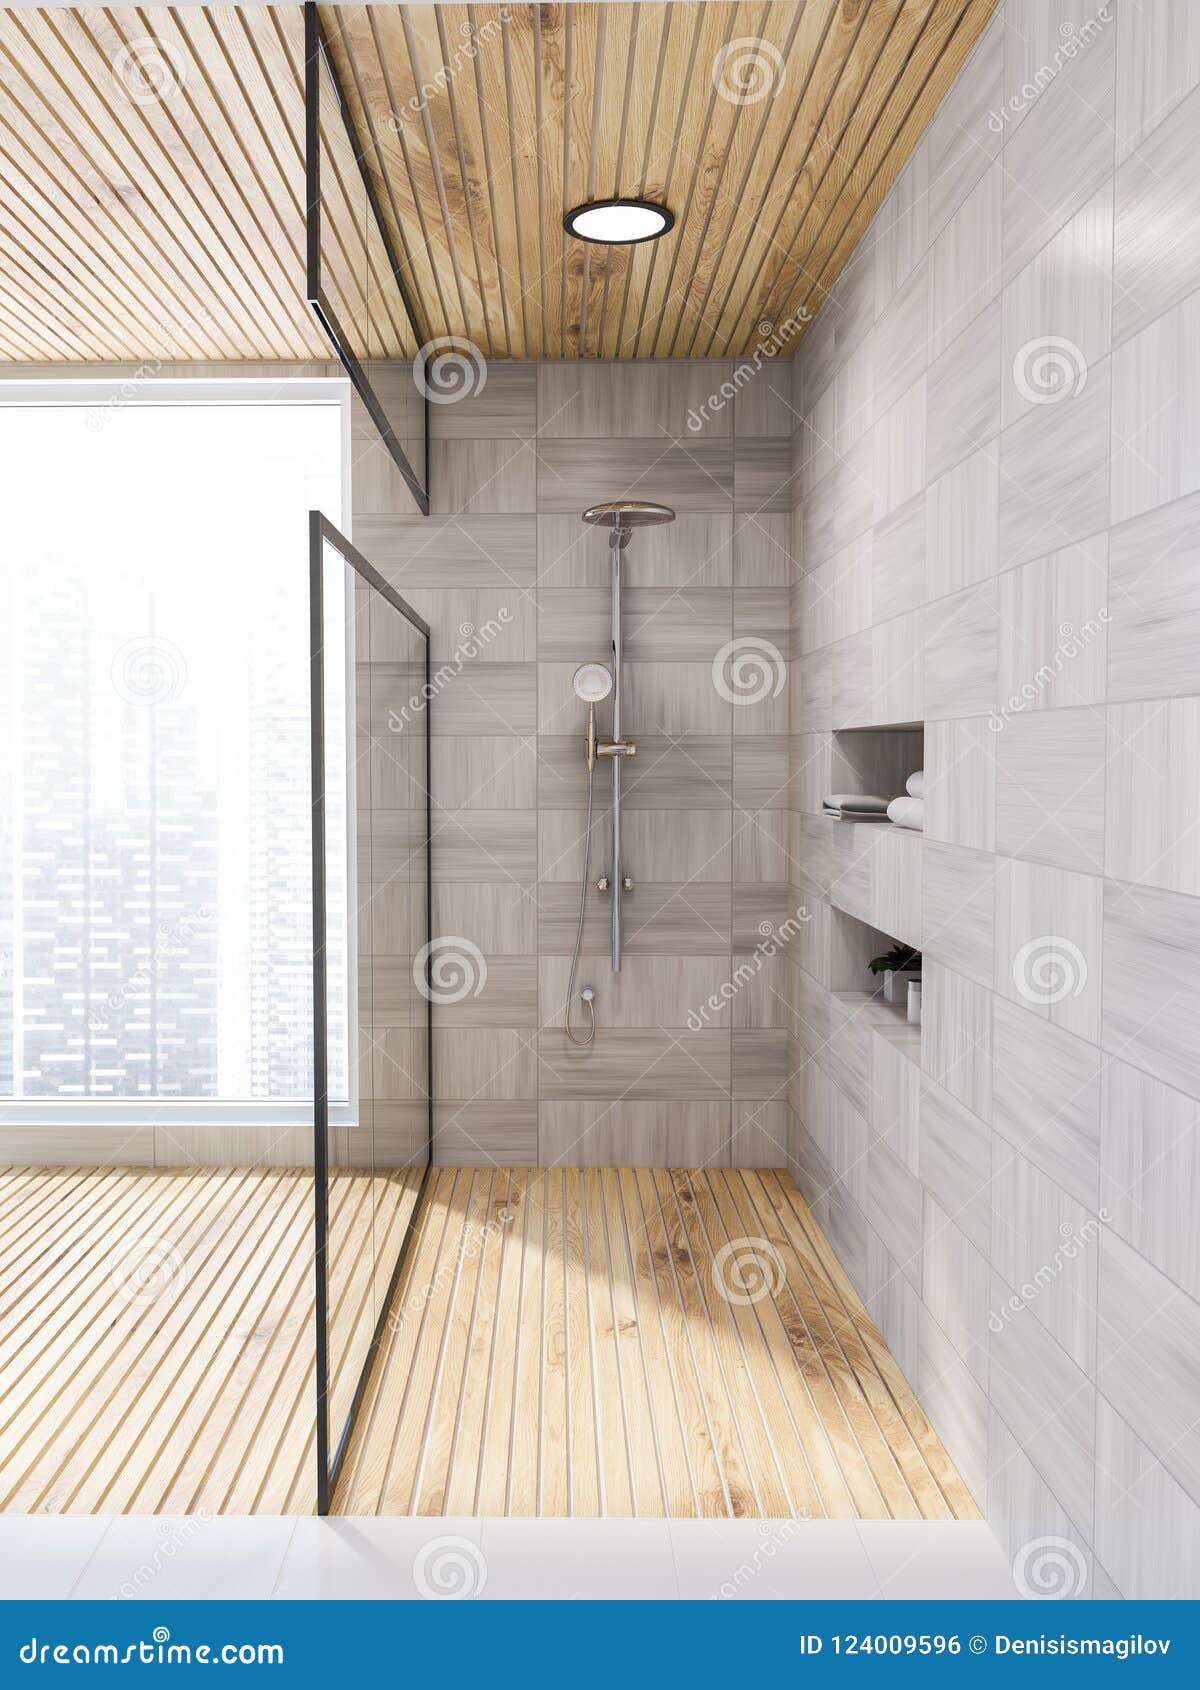 White Wood Bathroom Glass Door Shower Stock Illustration